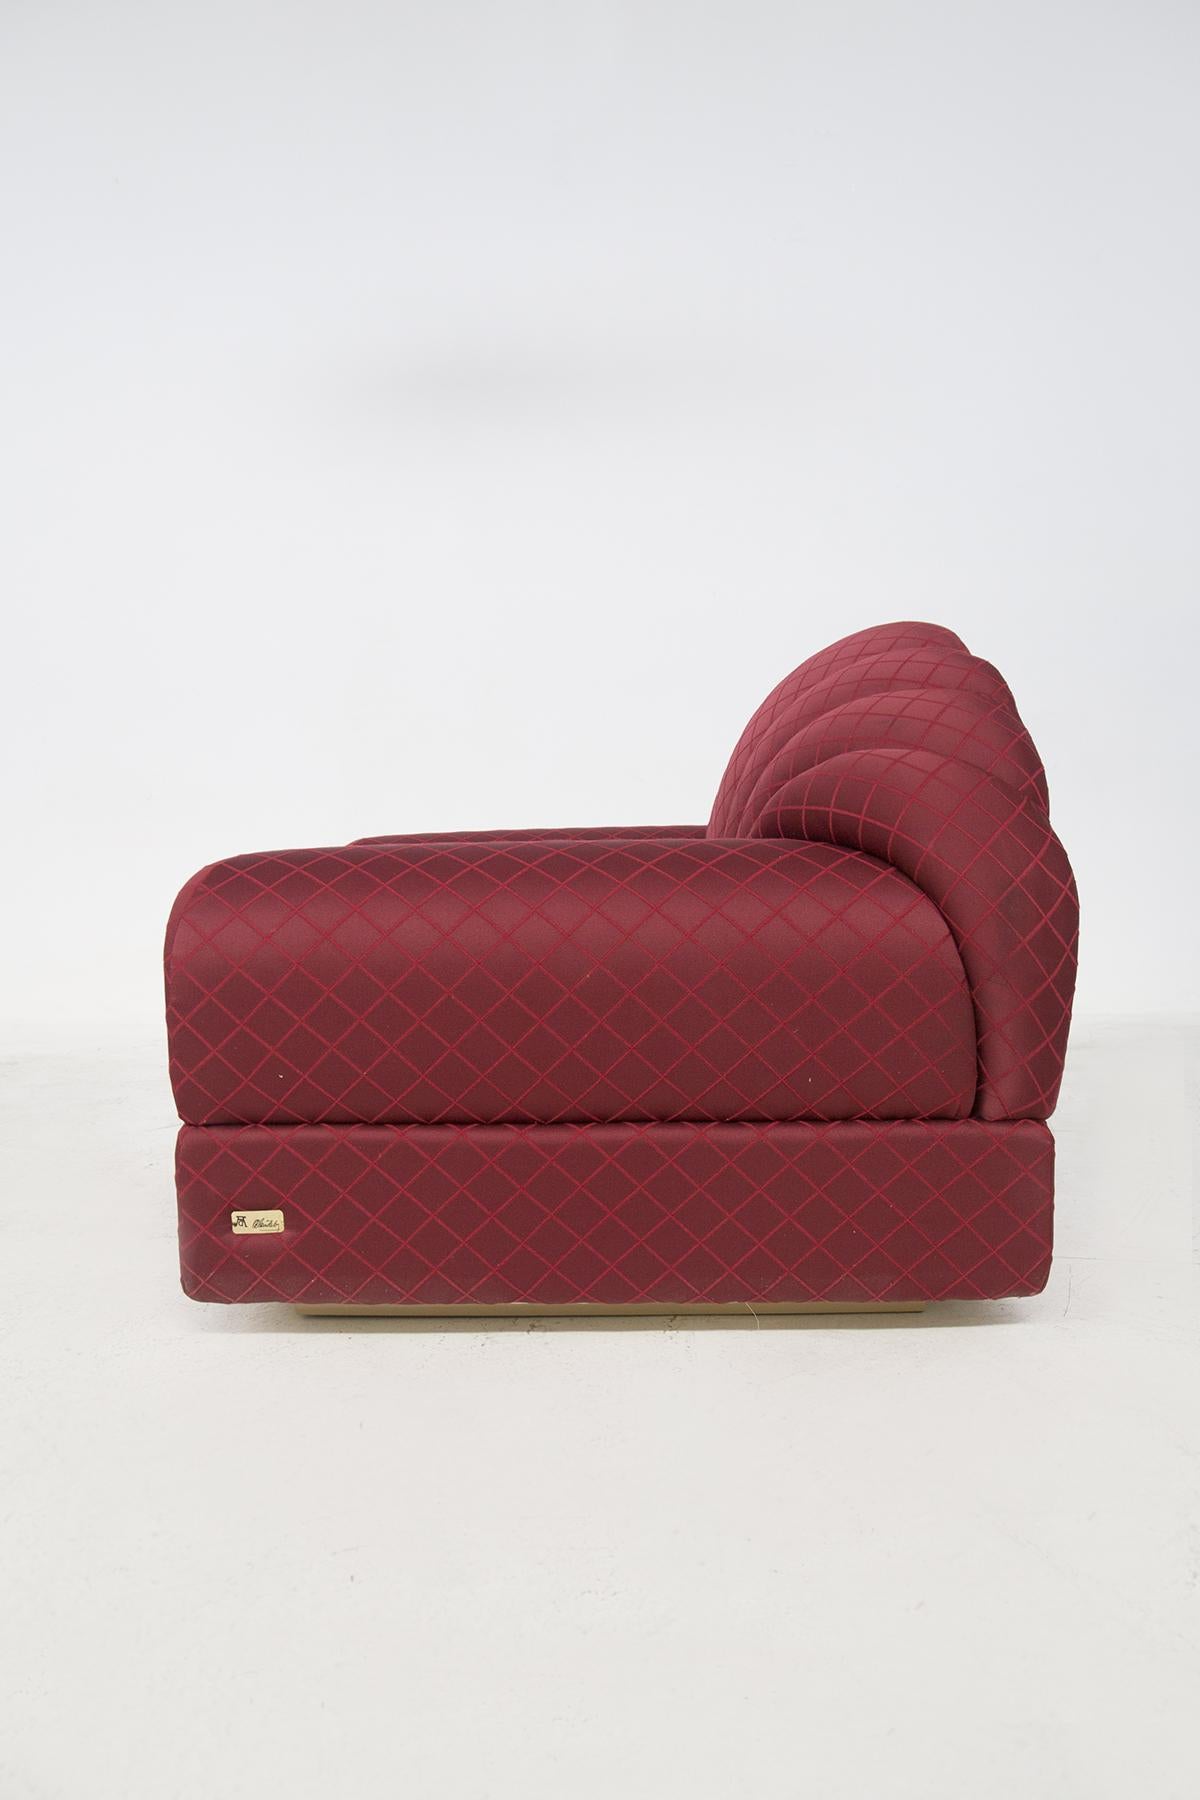 Alain Delon Vintage “Salon” Red Armchairs, Original Label For Sale 2